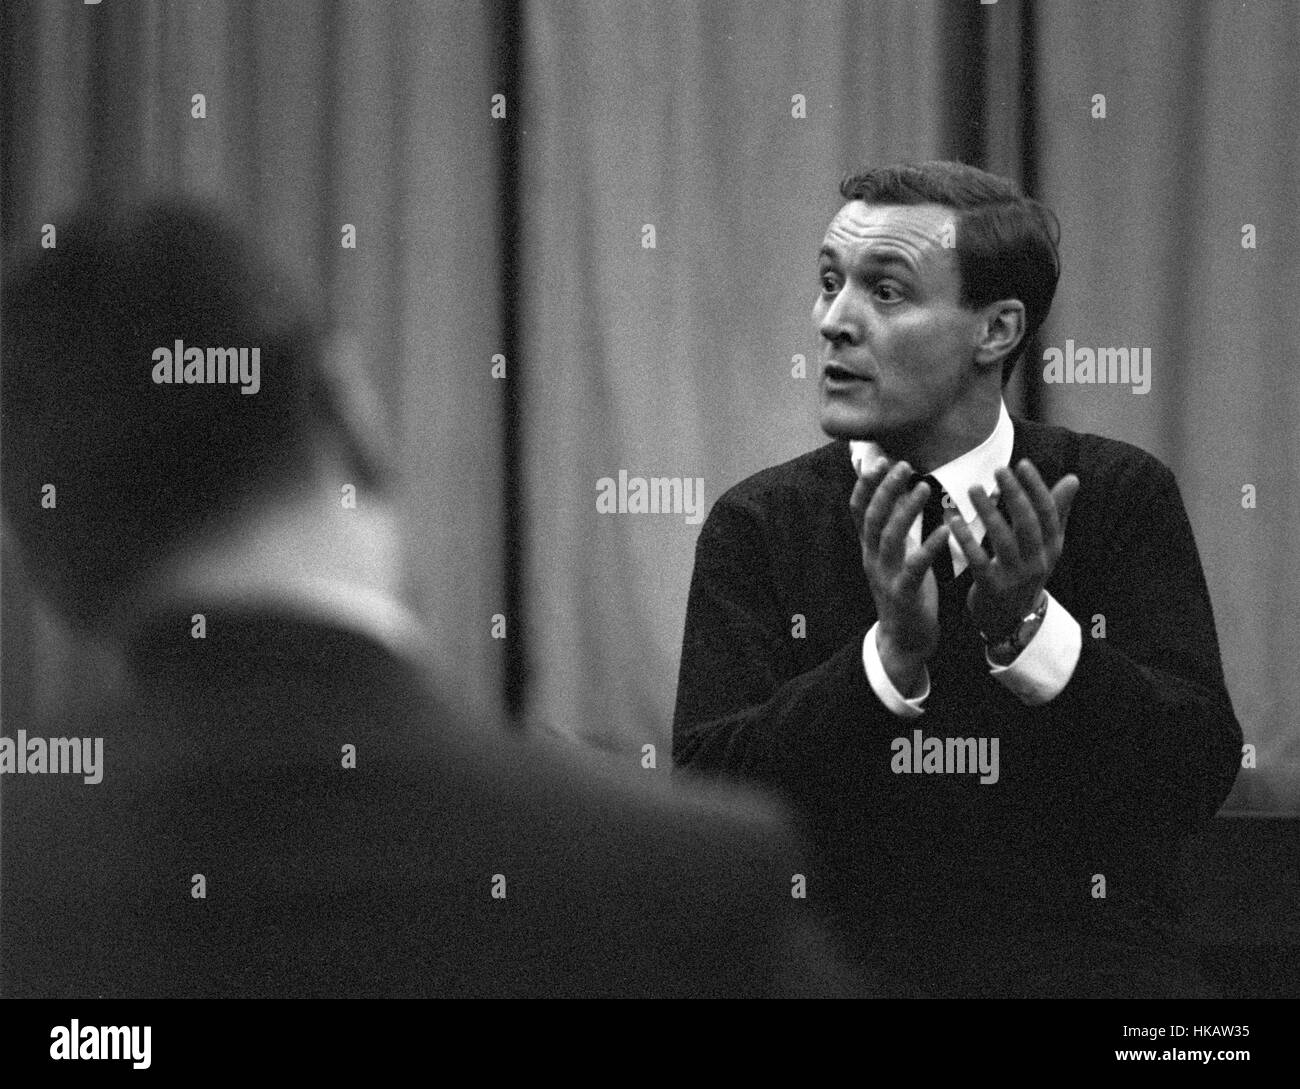 Tony Wedgwood Benn, ministre des Postes du Royaume-Uni, en 1963. Ici, il parle à un public restreint. Banque D'Images